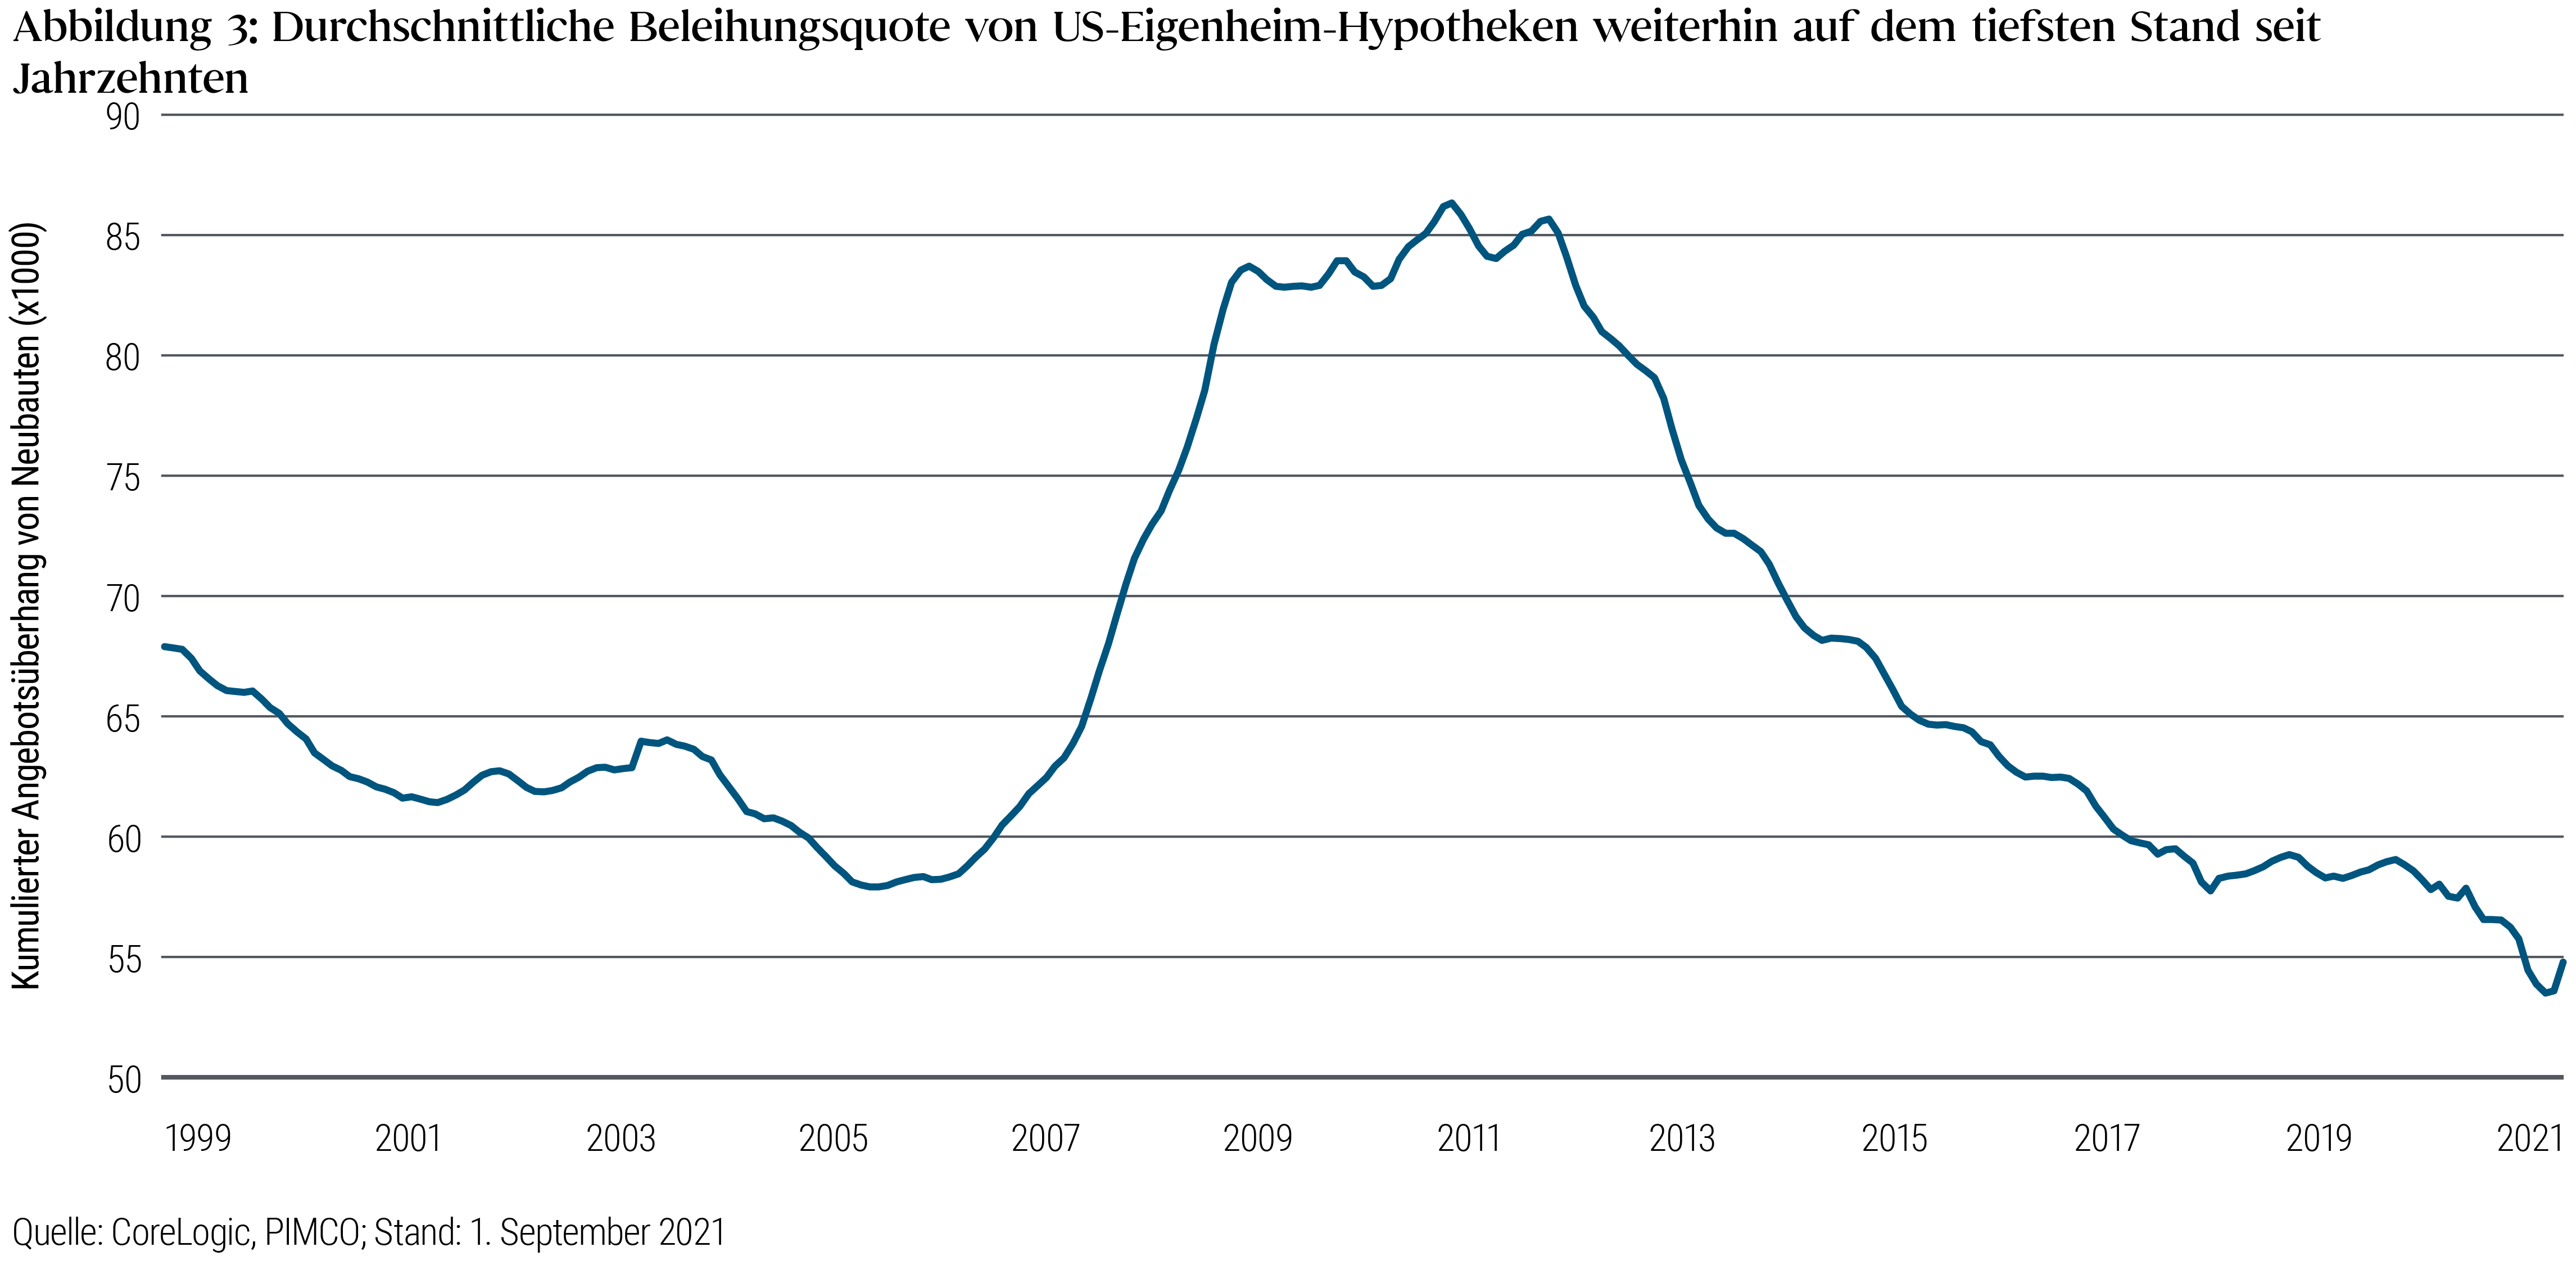 Abbildung 3: Durchschnittliche Beleihungsquote von US-Eigenheim-Hypotheken weiterhin auf dem tiefsten Stand seit Jahrzehnten